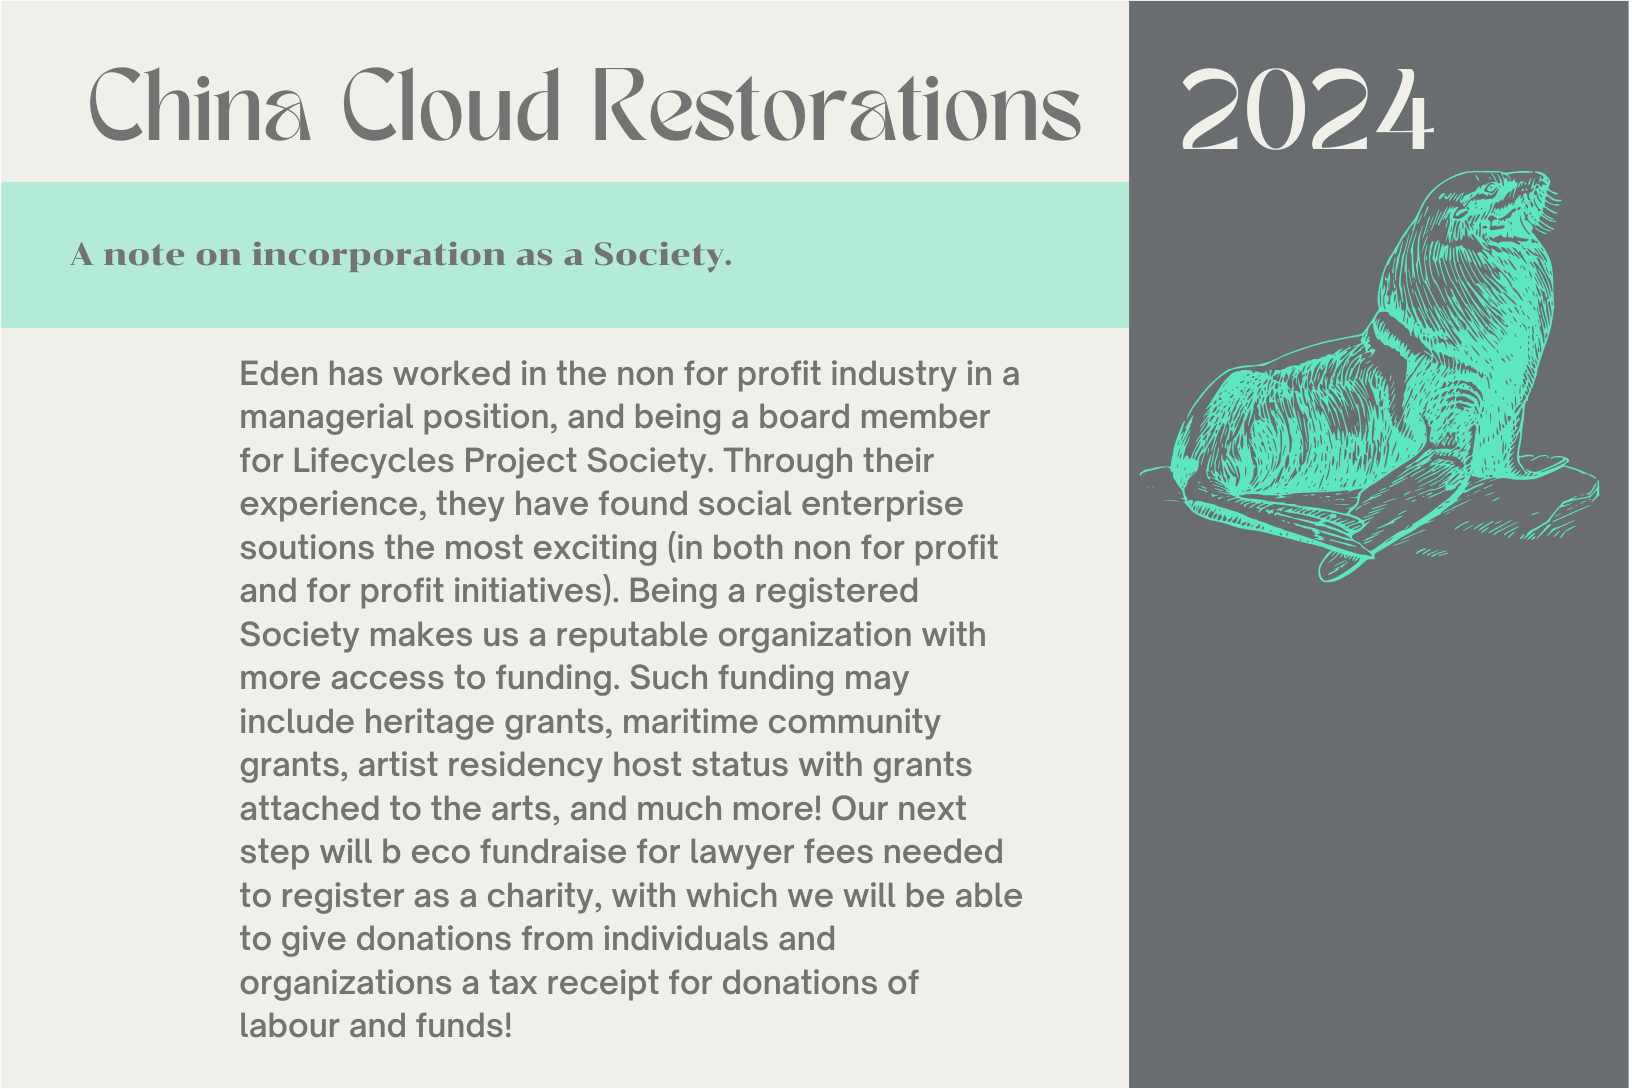 China Cloud Restorations 2024-3 copy 6.png